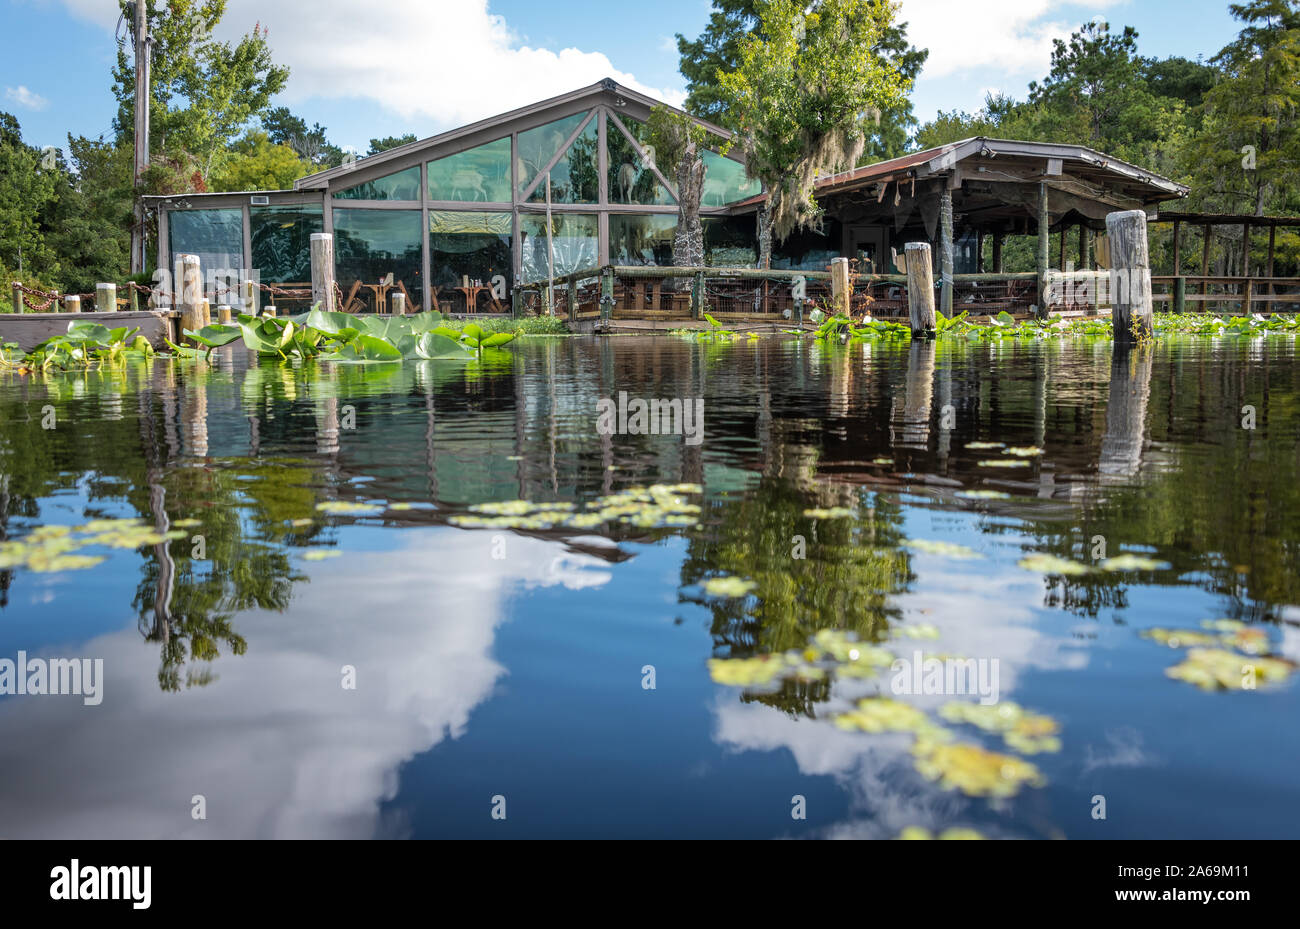 Clark's Fish Camp offre une expérience culinaire unique sur Julington Creek dans la région de Jacksonville, FL à la plus grande collection de taxidermie privée aux États-Unis. Banque D'Images